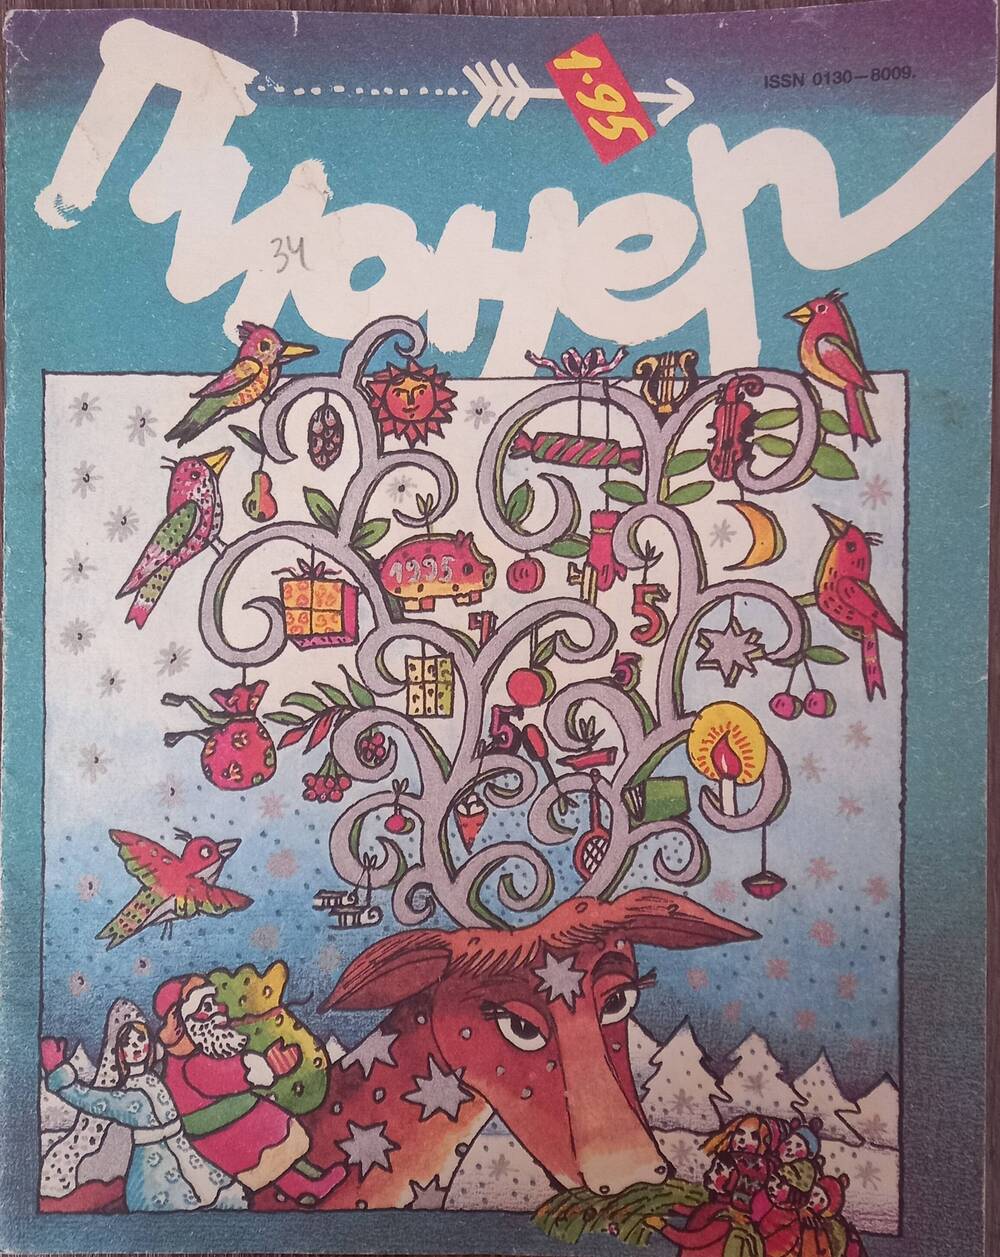 Журнал  Пионер №1.1995 год. Ежемесячный иллюстрированный детский журнал.